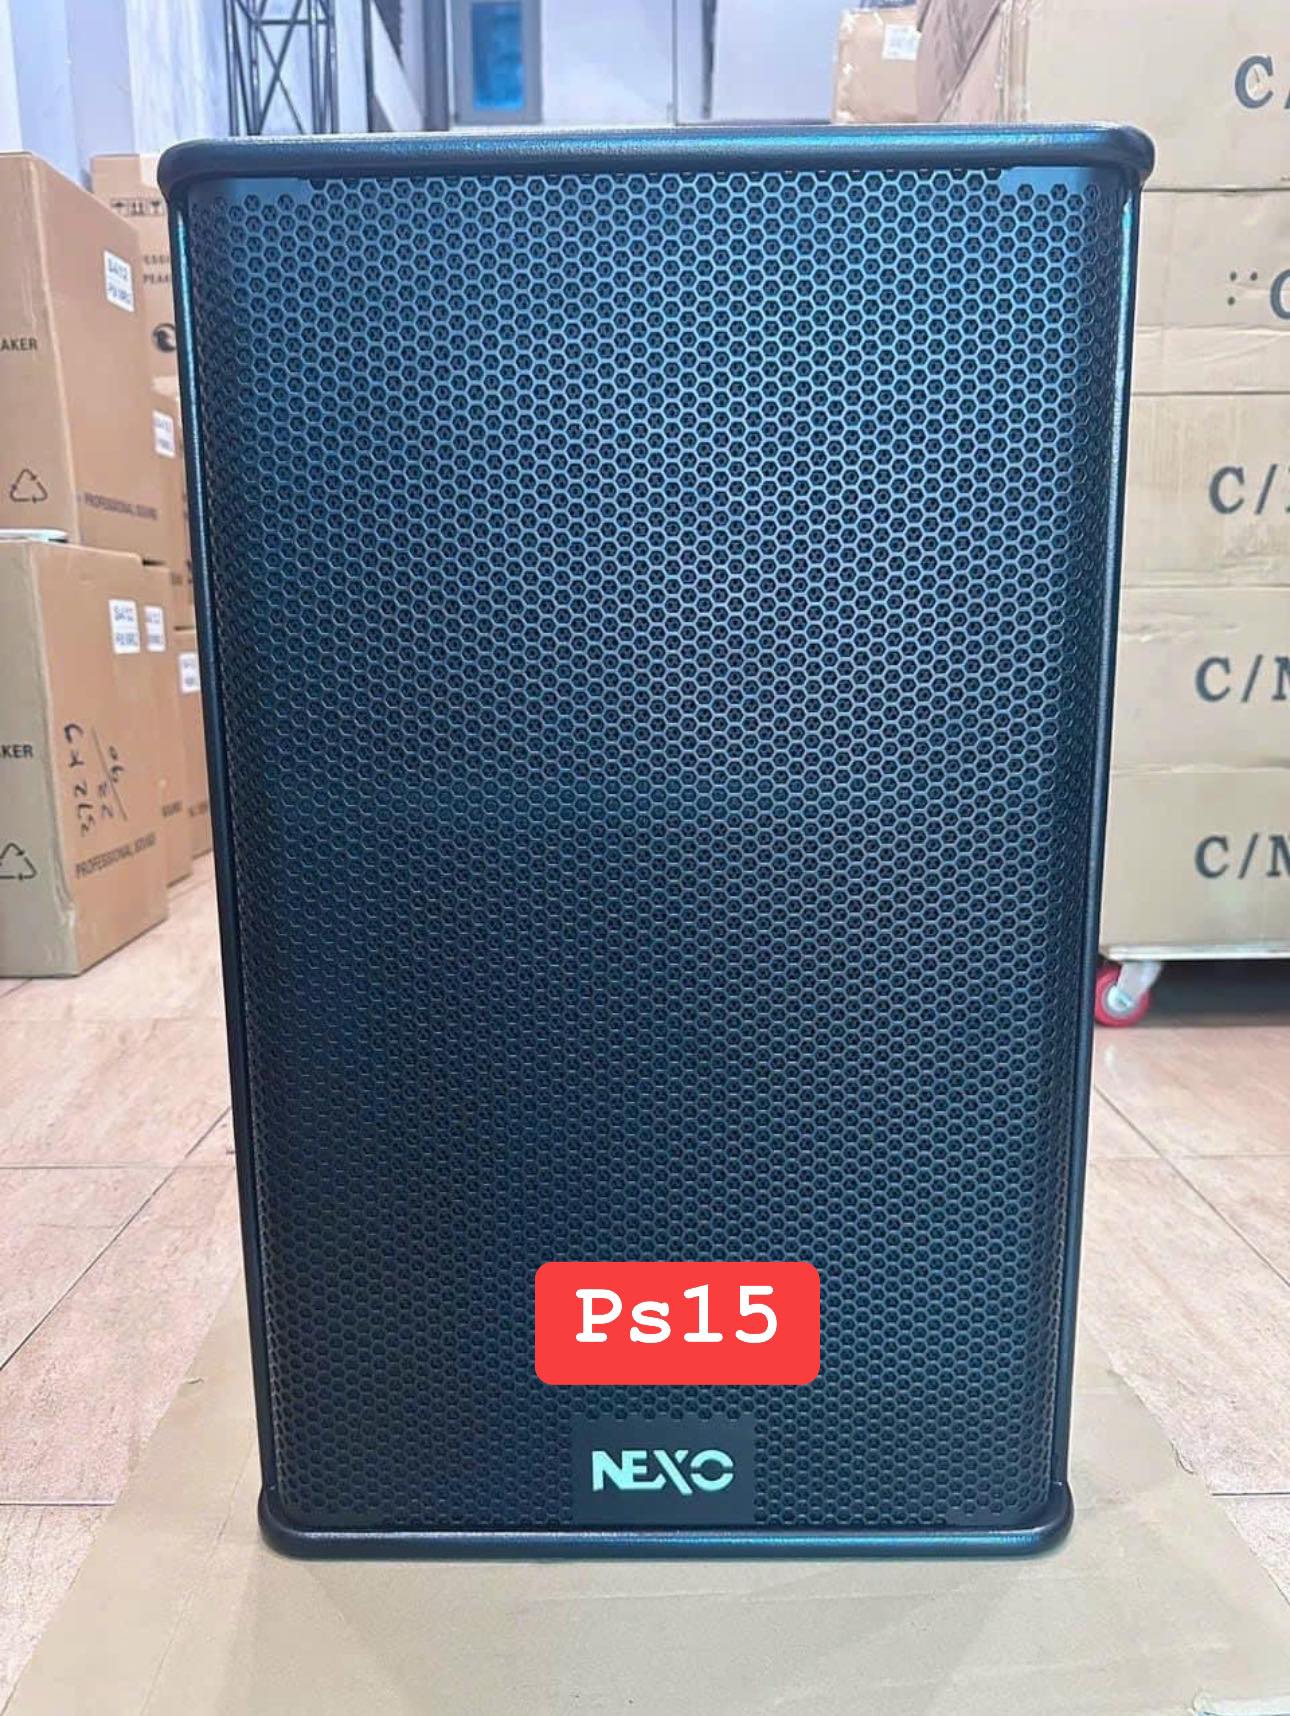 LOA NEXO 40 PS15 R2 (sử dụng 2 phân tần)NHẬP NGUYÊN CON CHINA